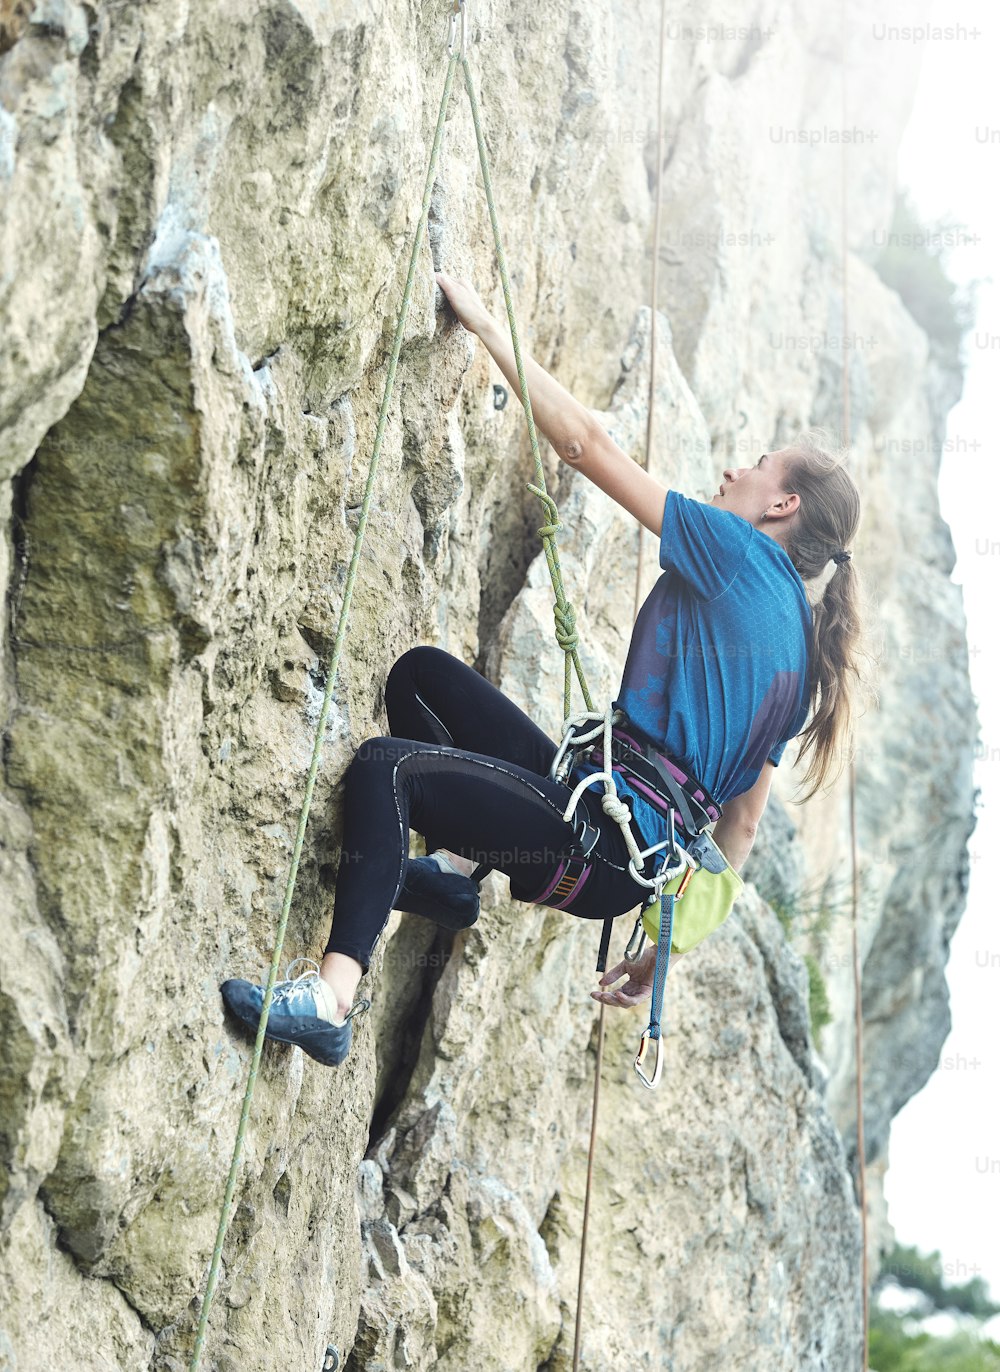 donna adulta scalatrice di roccia. arrampicatore su una parete rocciosa. la donna fa una mossa difficile